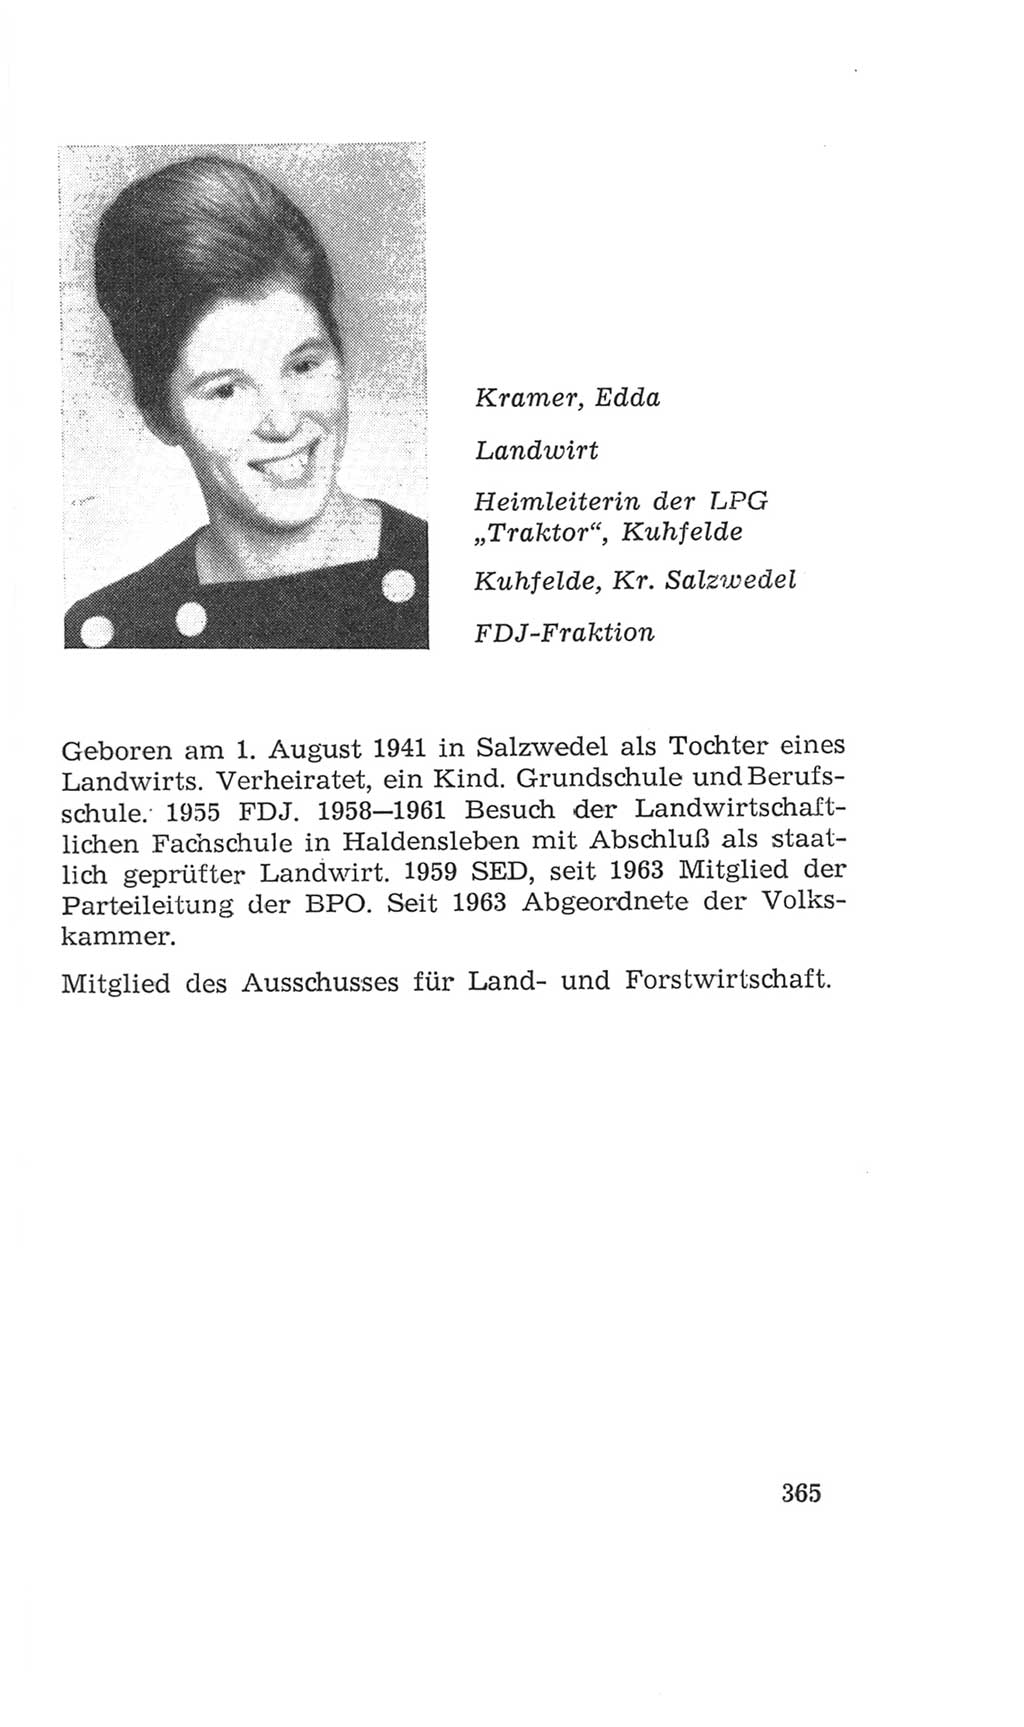 Volkskammer (VK) der Deutschen Demokratischen Republik (DDR), 4. Wahlperiode 1963-1967, Seite 365 (VK. DDR 4. WP. 1963-1967, S. 365)